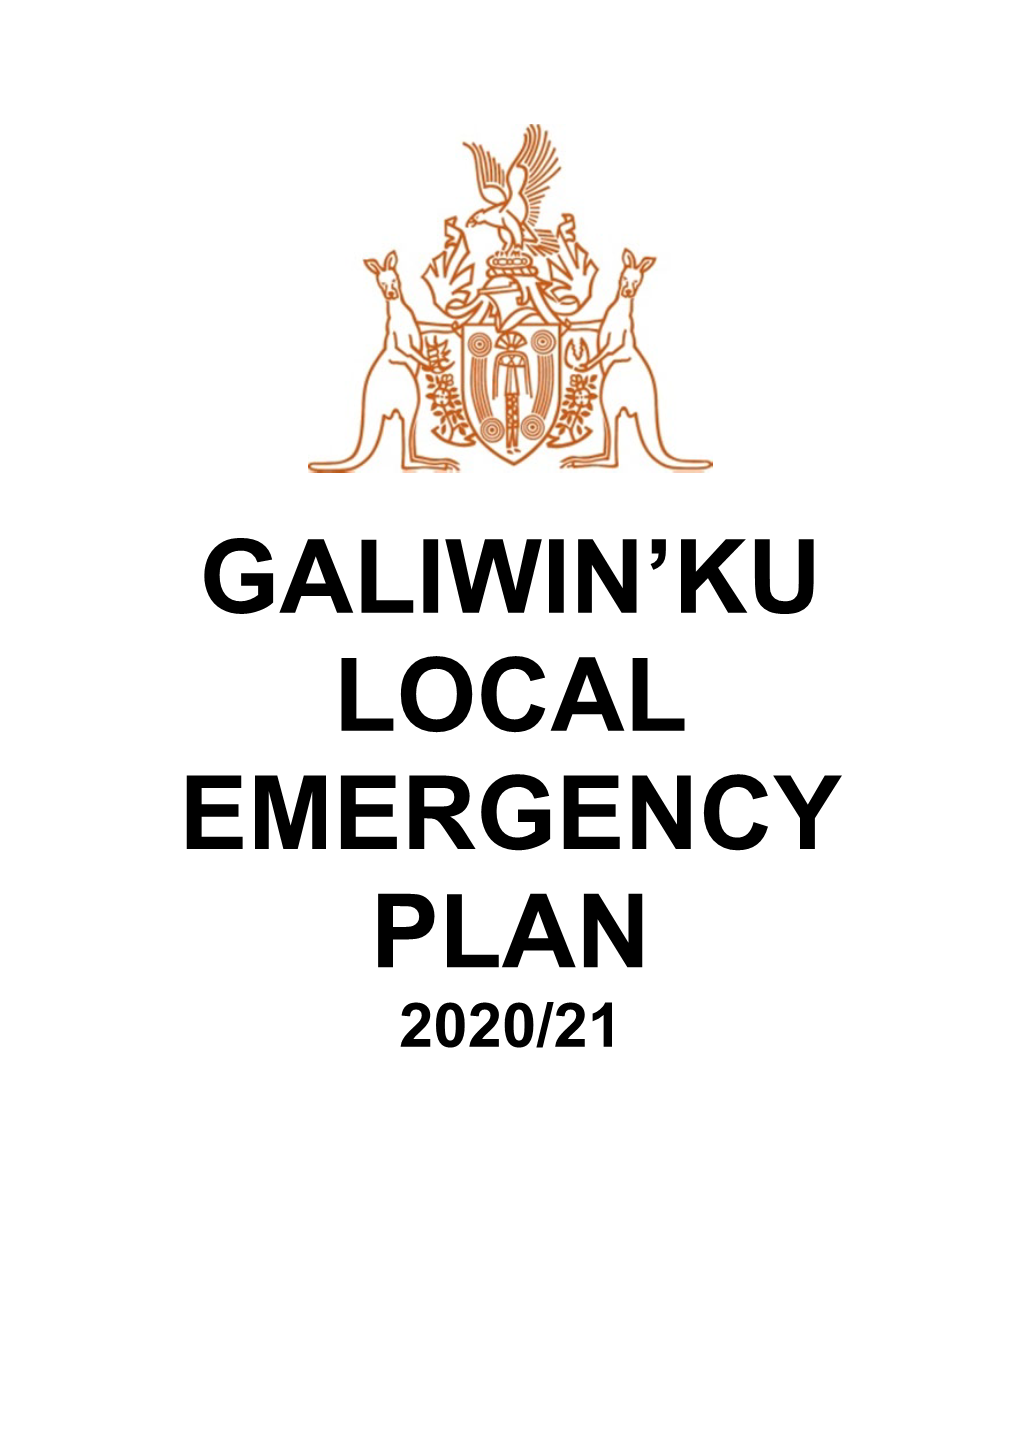 Galiwin'ku Local Emergency Plan